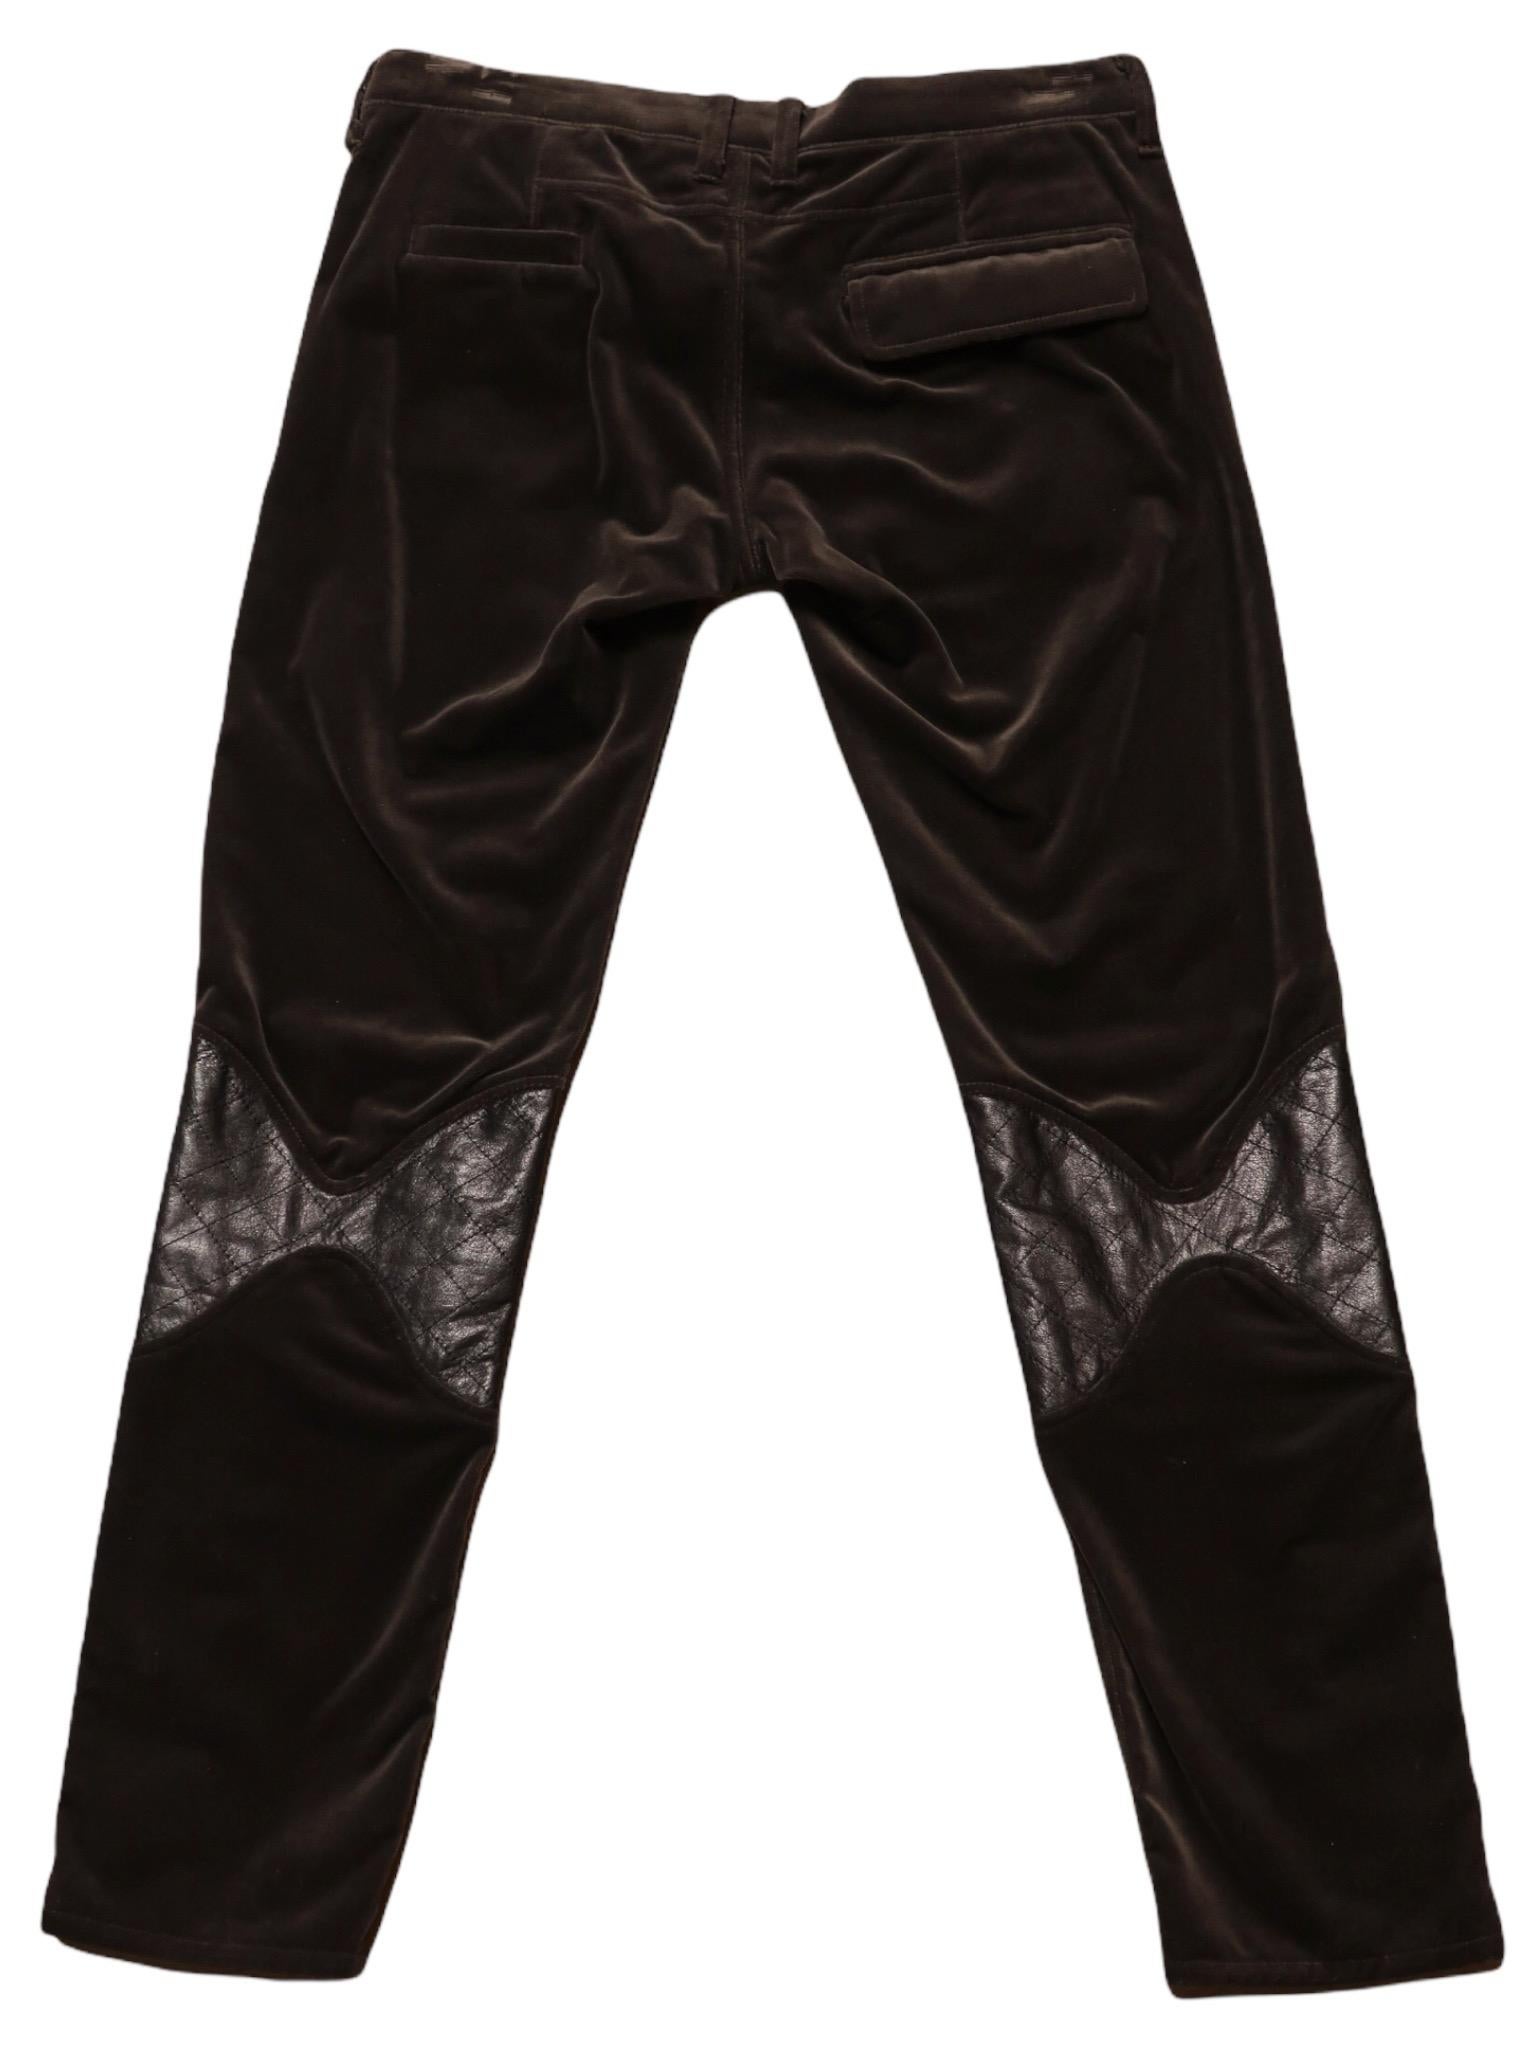 Pantalon droit vintage Undercover de couleur anthracite, doux et velouté, avec des pièces de cuir aux genoux et des jambes zippées. Fermeture à glissière et boutons-pression sur le devant, poches avant et arrière.